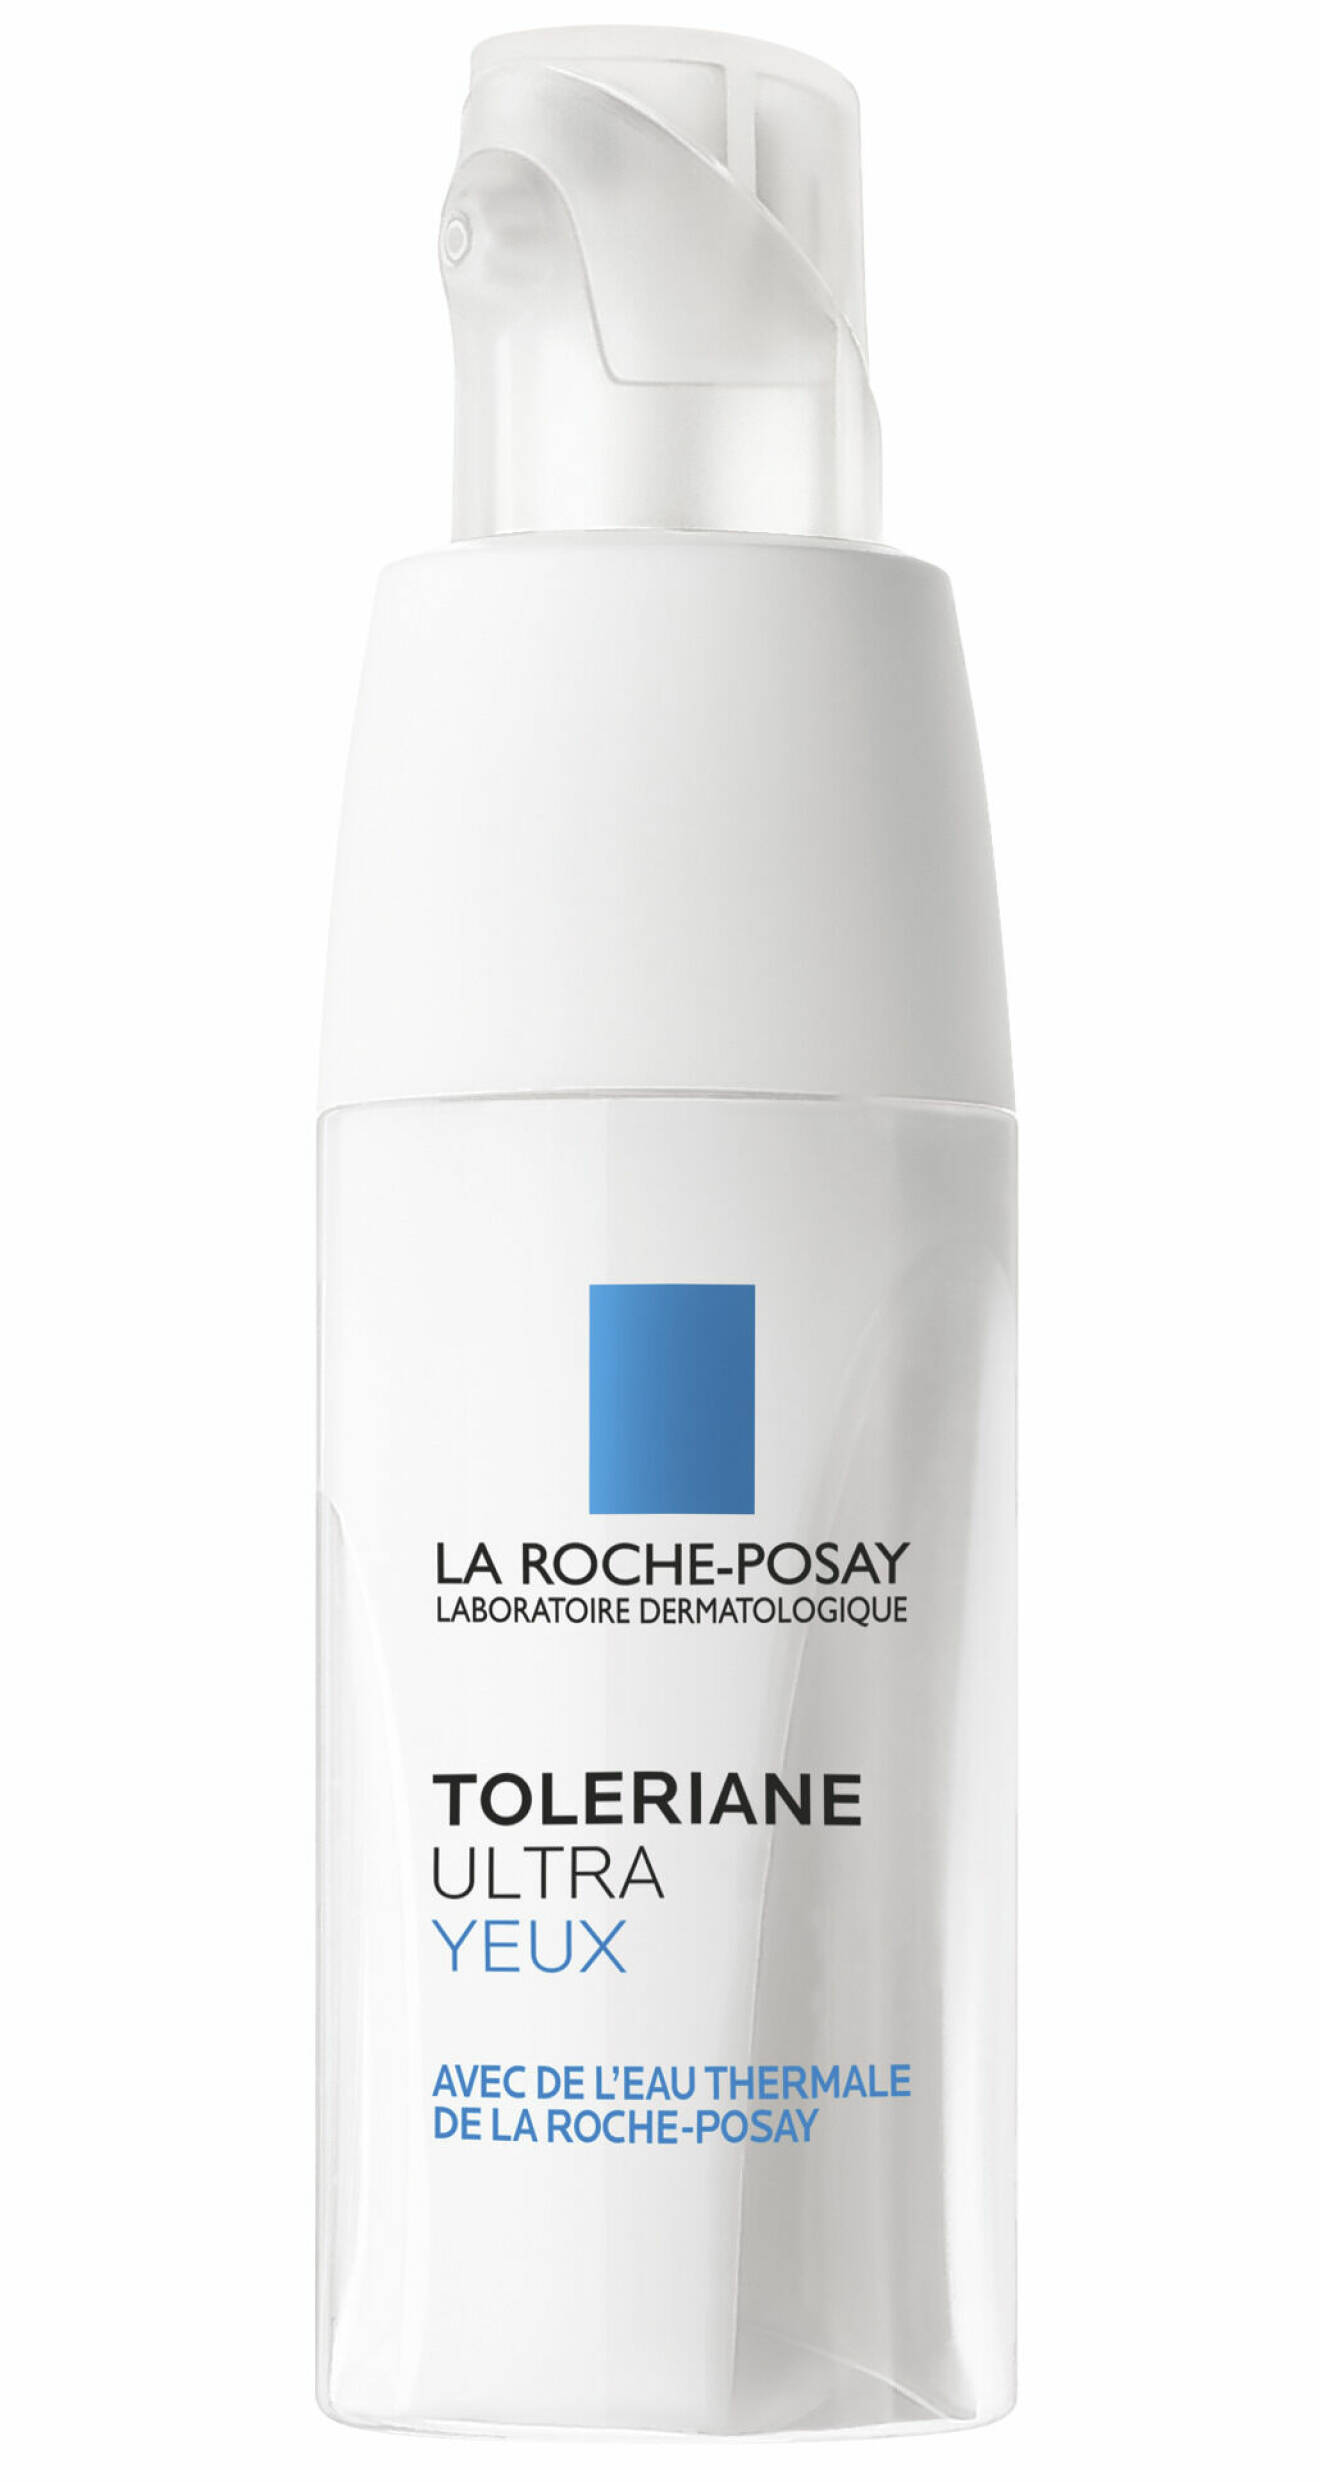 Toleriane Ultra Yeux, ögonkräm från La Roche-Posay